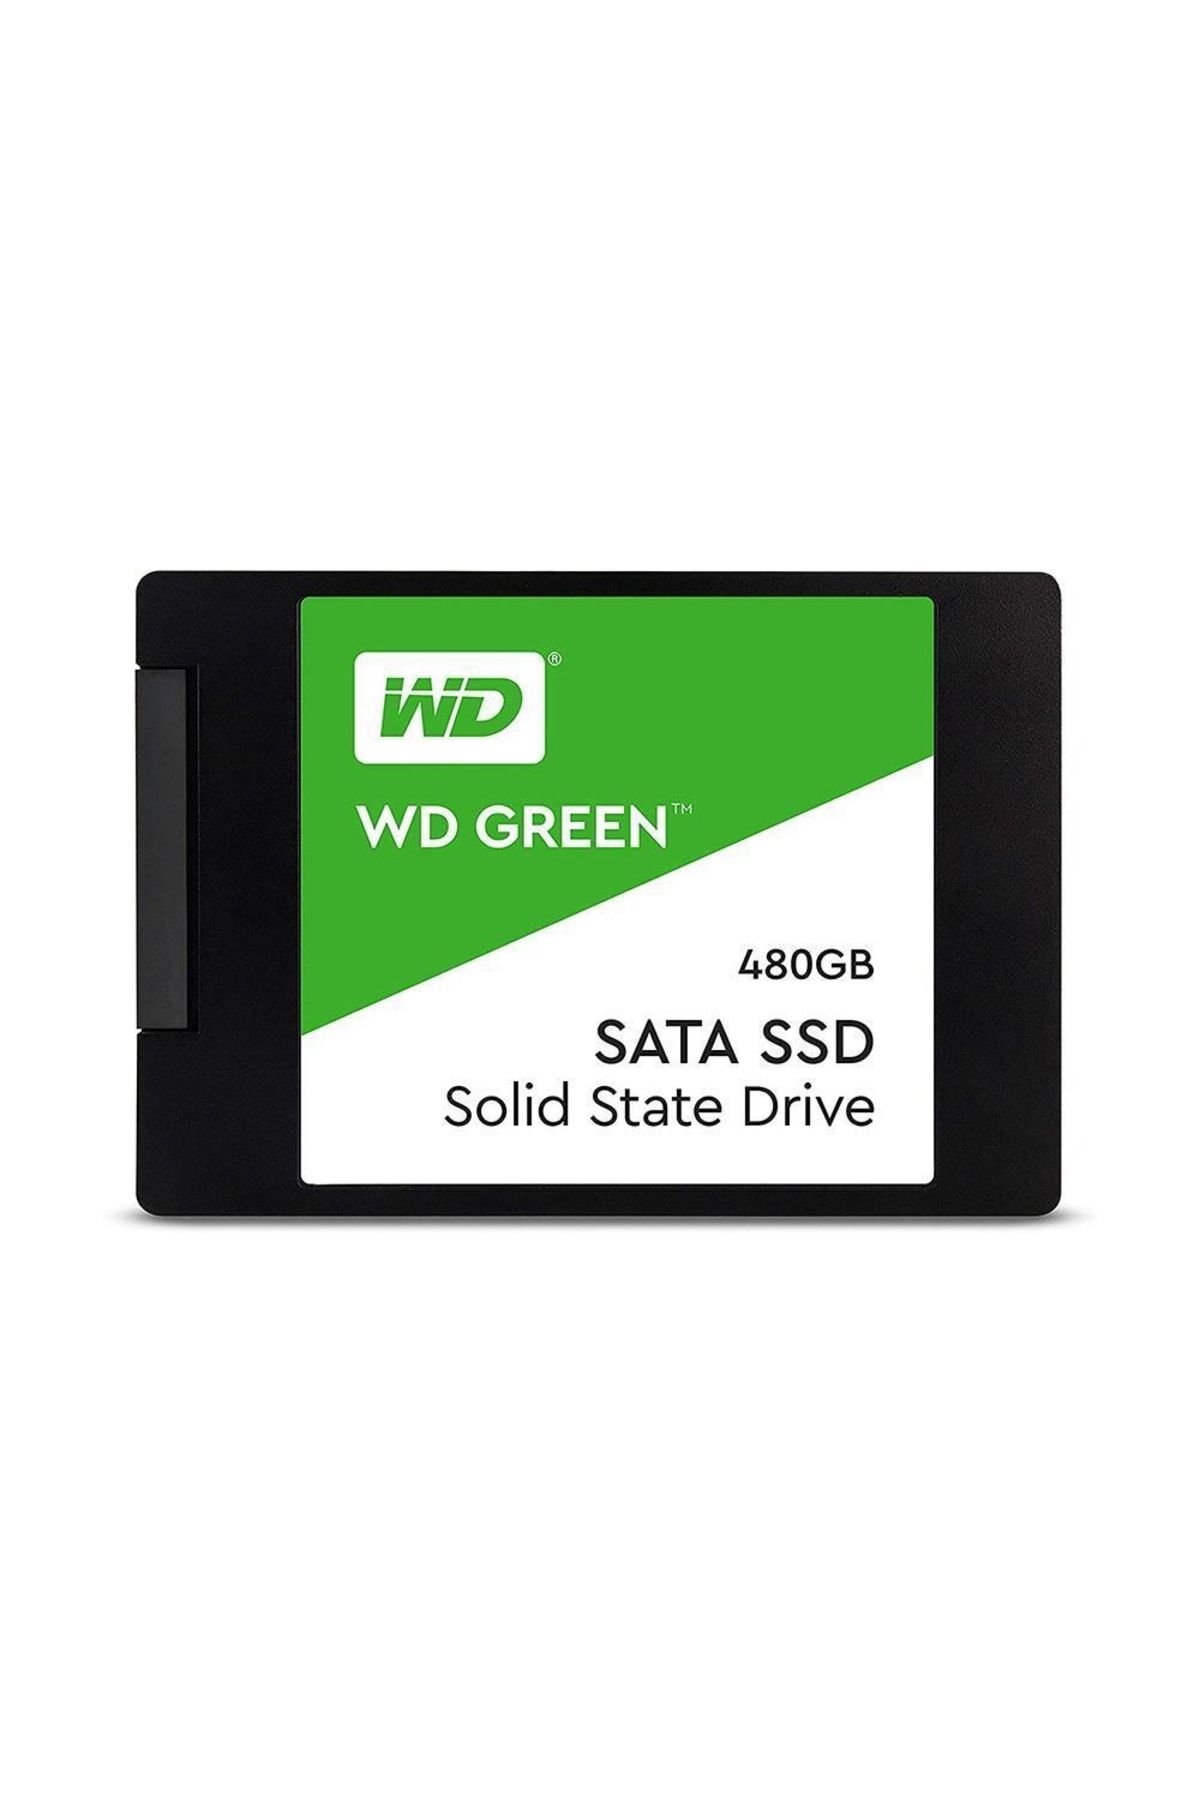 WD Western 480gb Digital Green Ssd Wds480g2g0a Sata